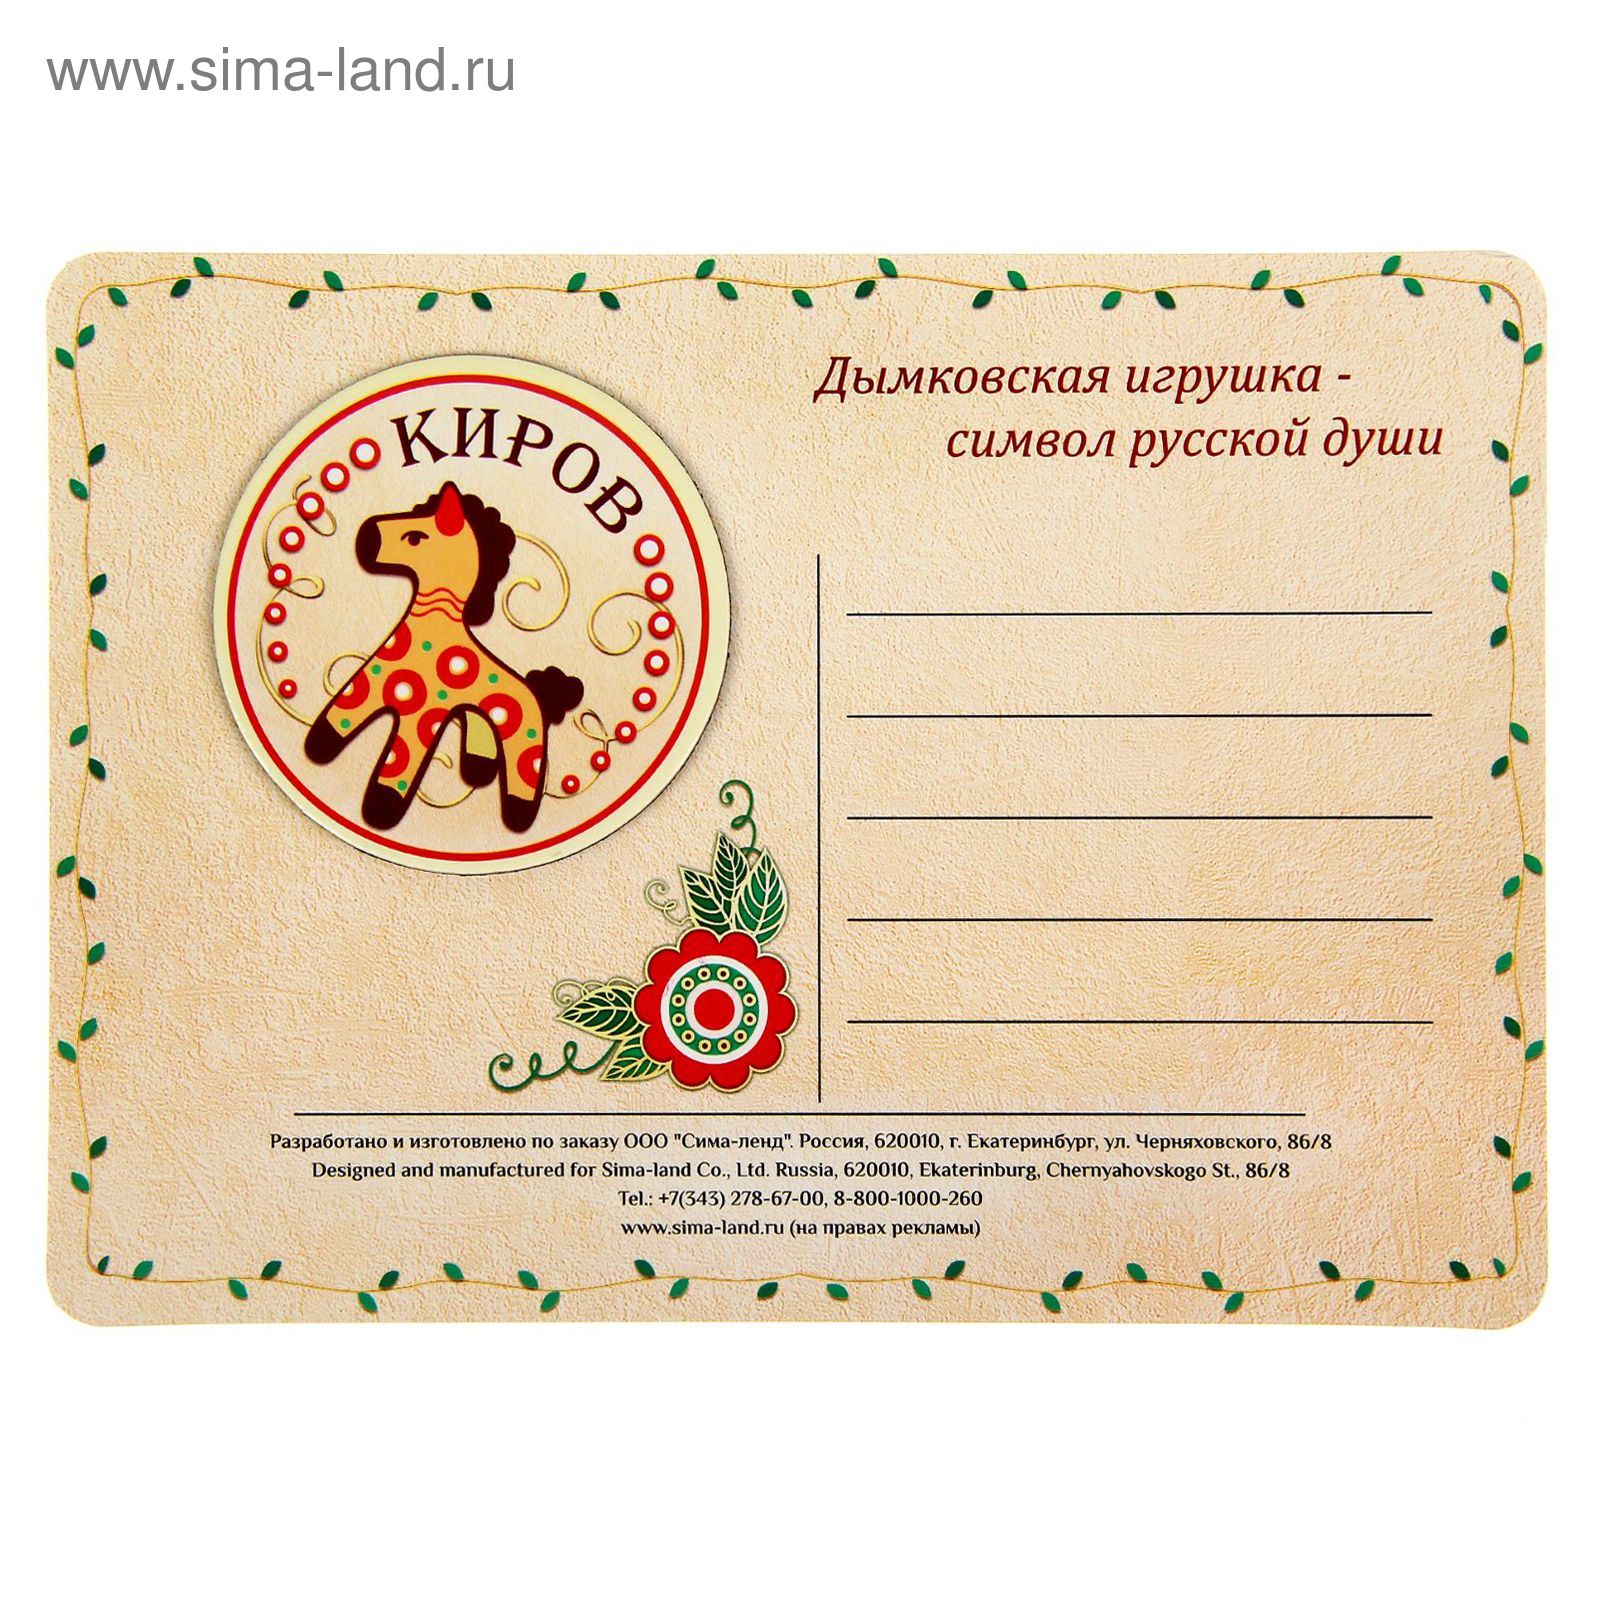 Киров - почтовая открытка